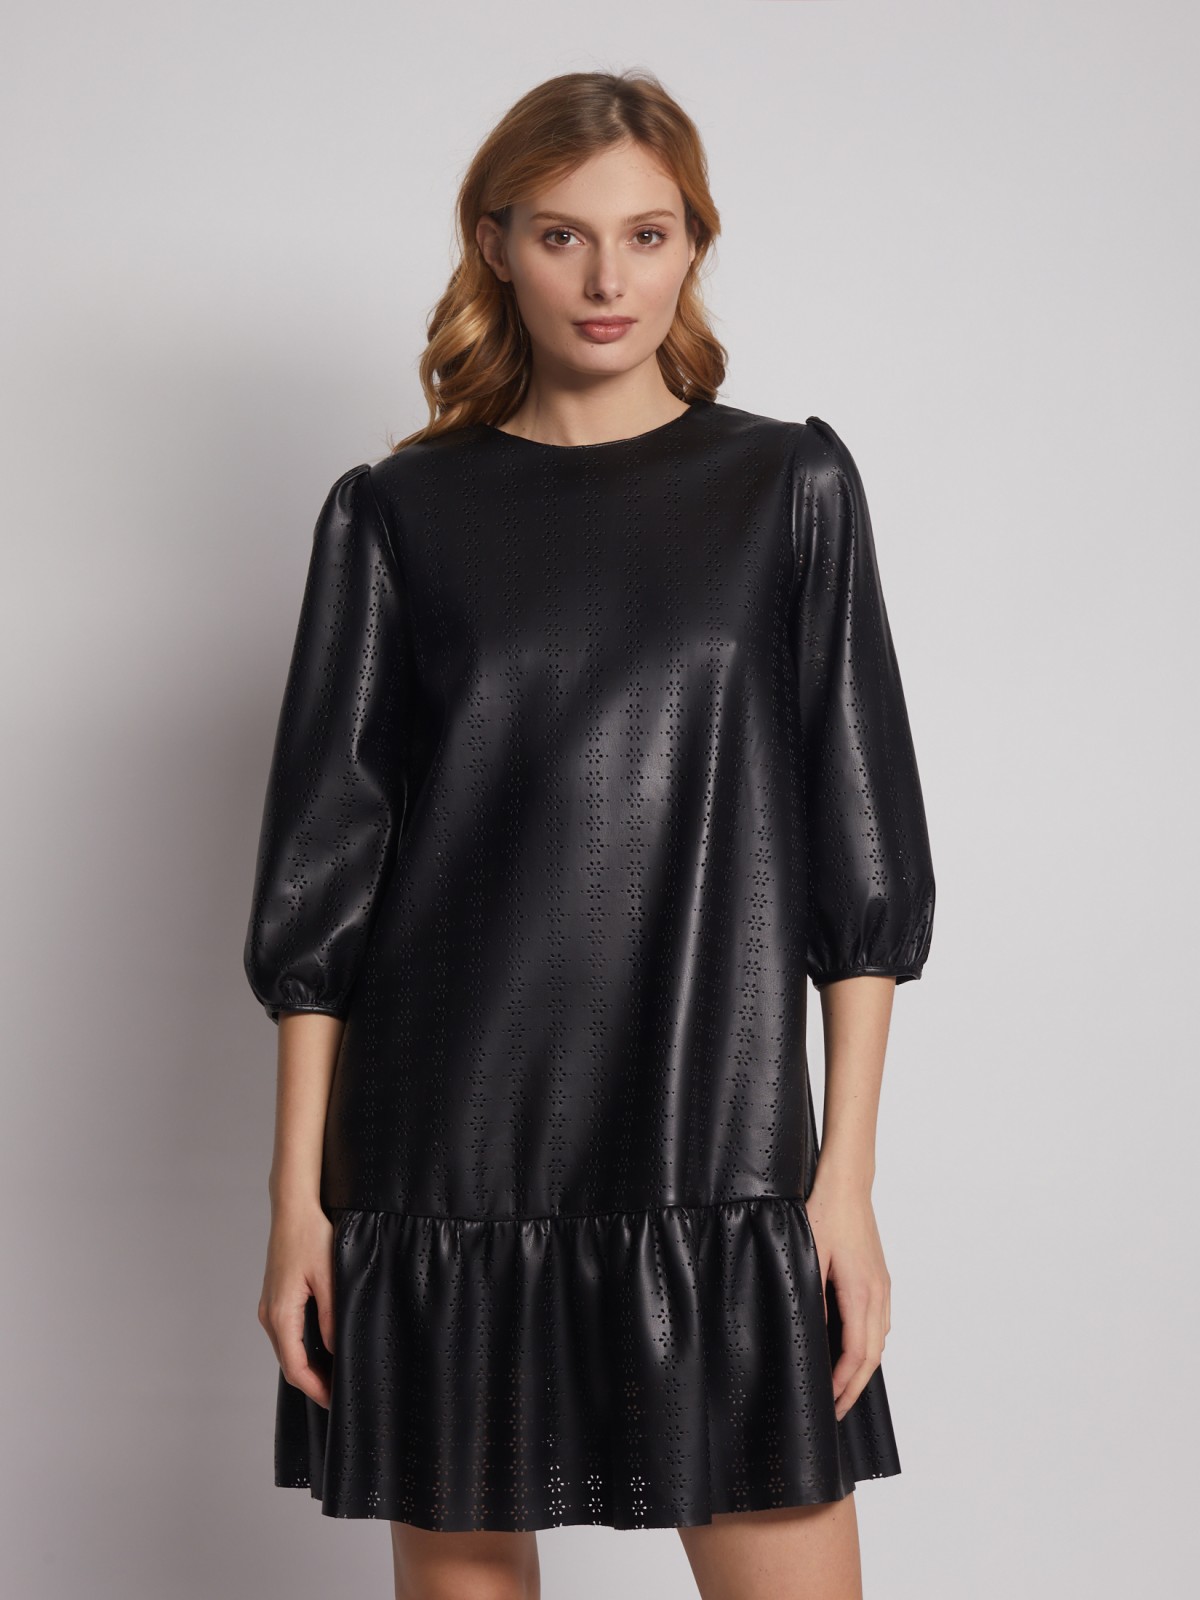 Платье из экокожи с перфорированным узором zolla 222428159131, цвет черный, размер XS - фото 1